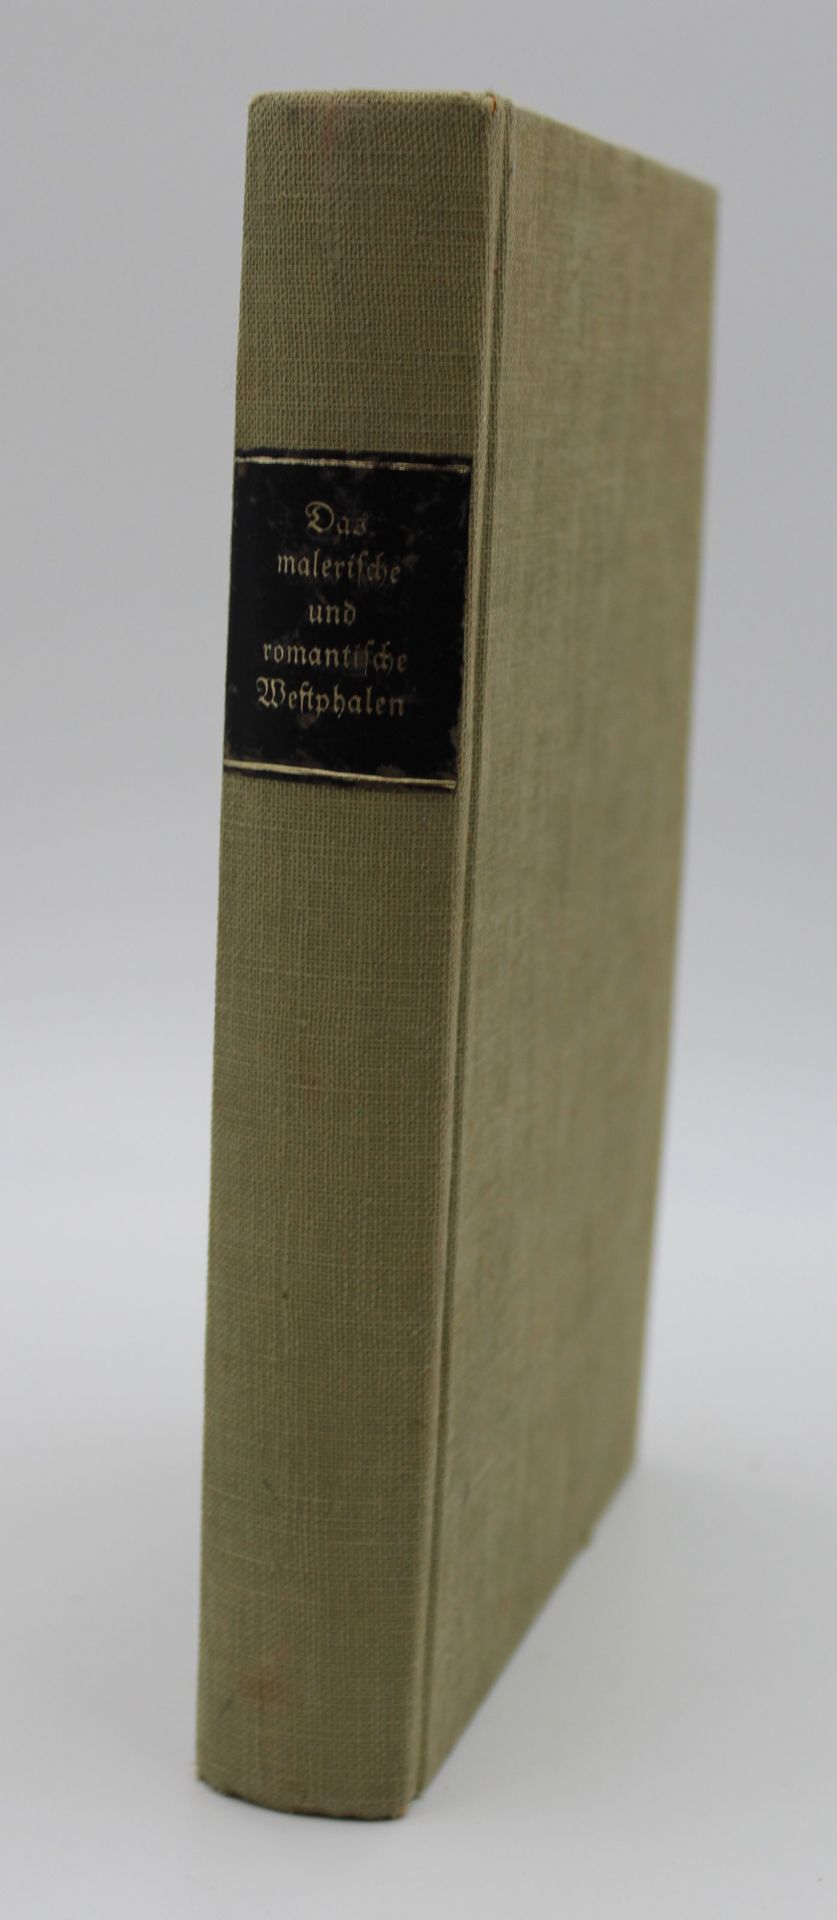 Schüking/Freiligrath, Das malerische und romantische Westphalen, 1872, stockfleckig